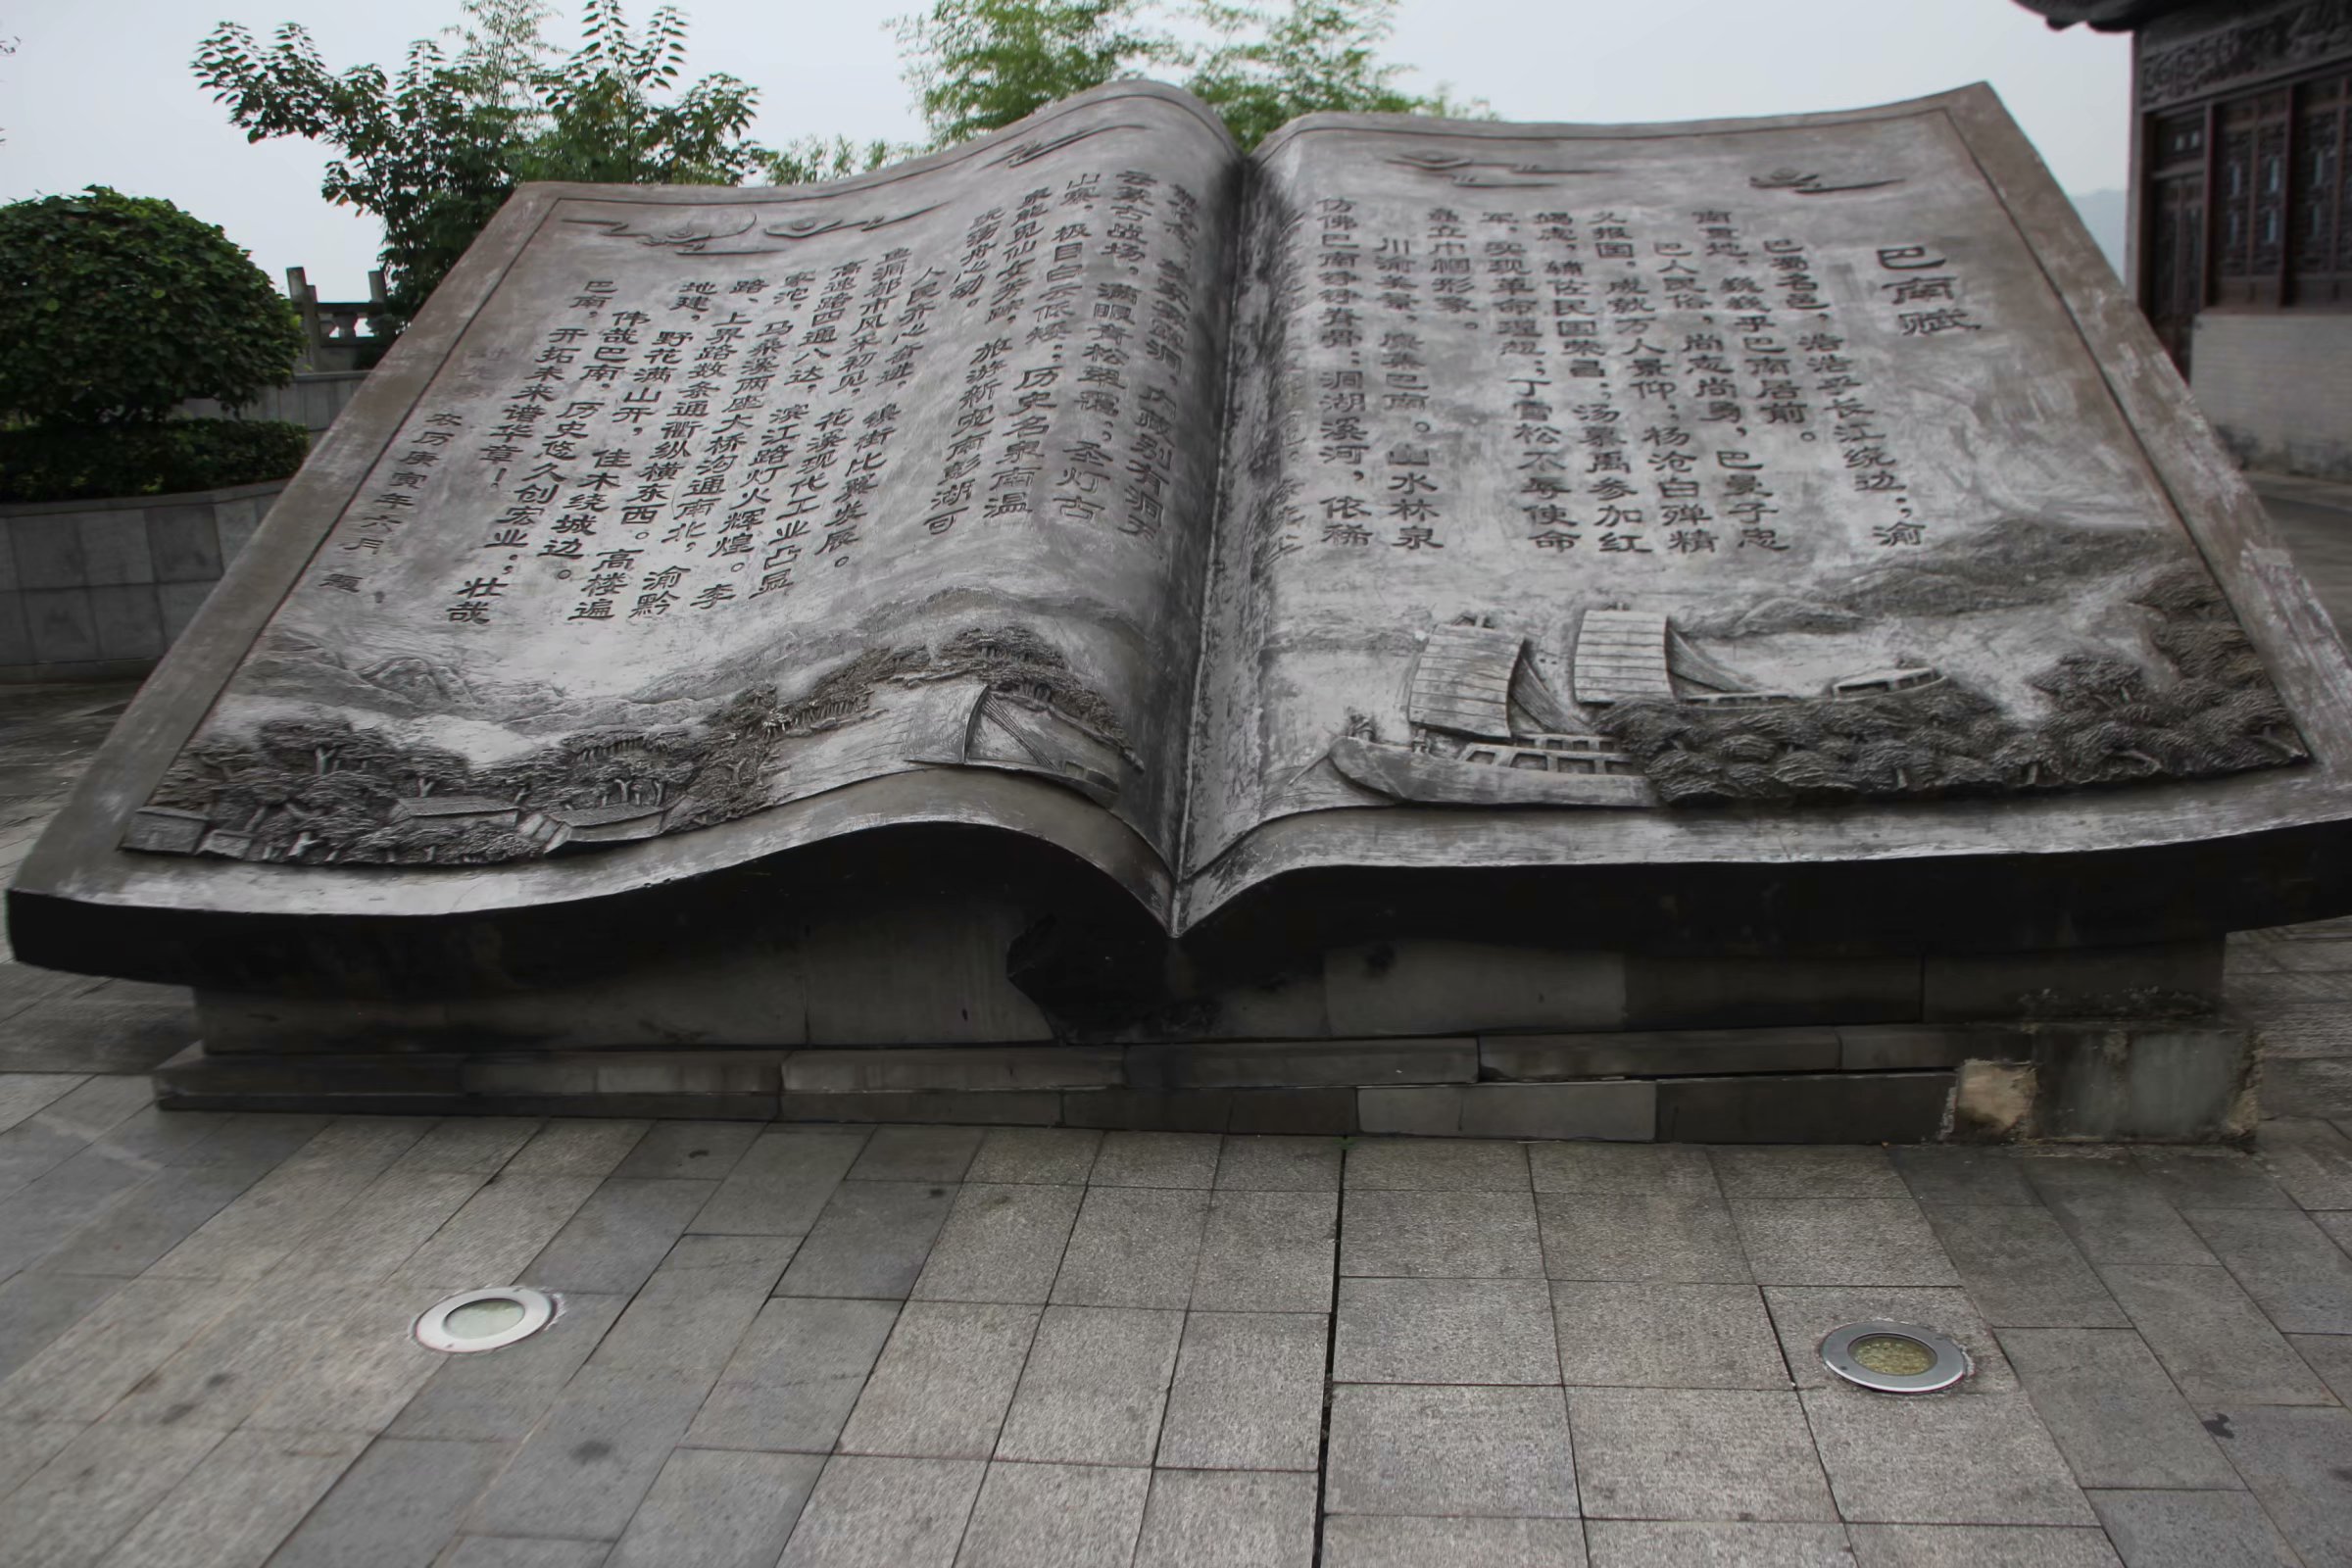 重庆一景区现巨型石雕书 既描述景区环境又展示了历史